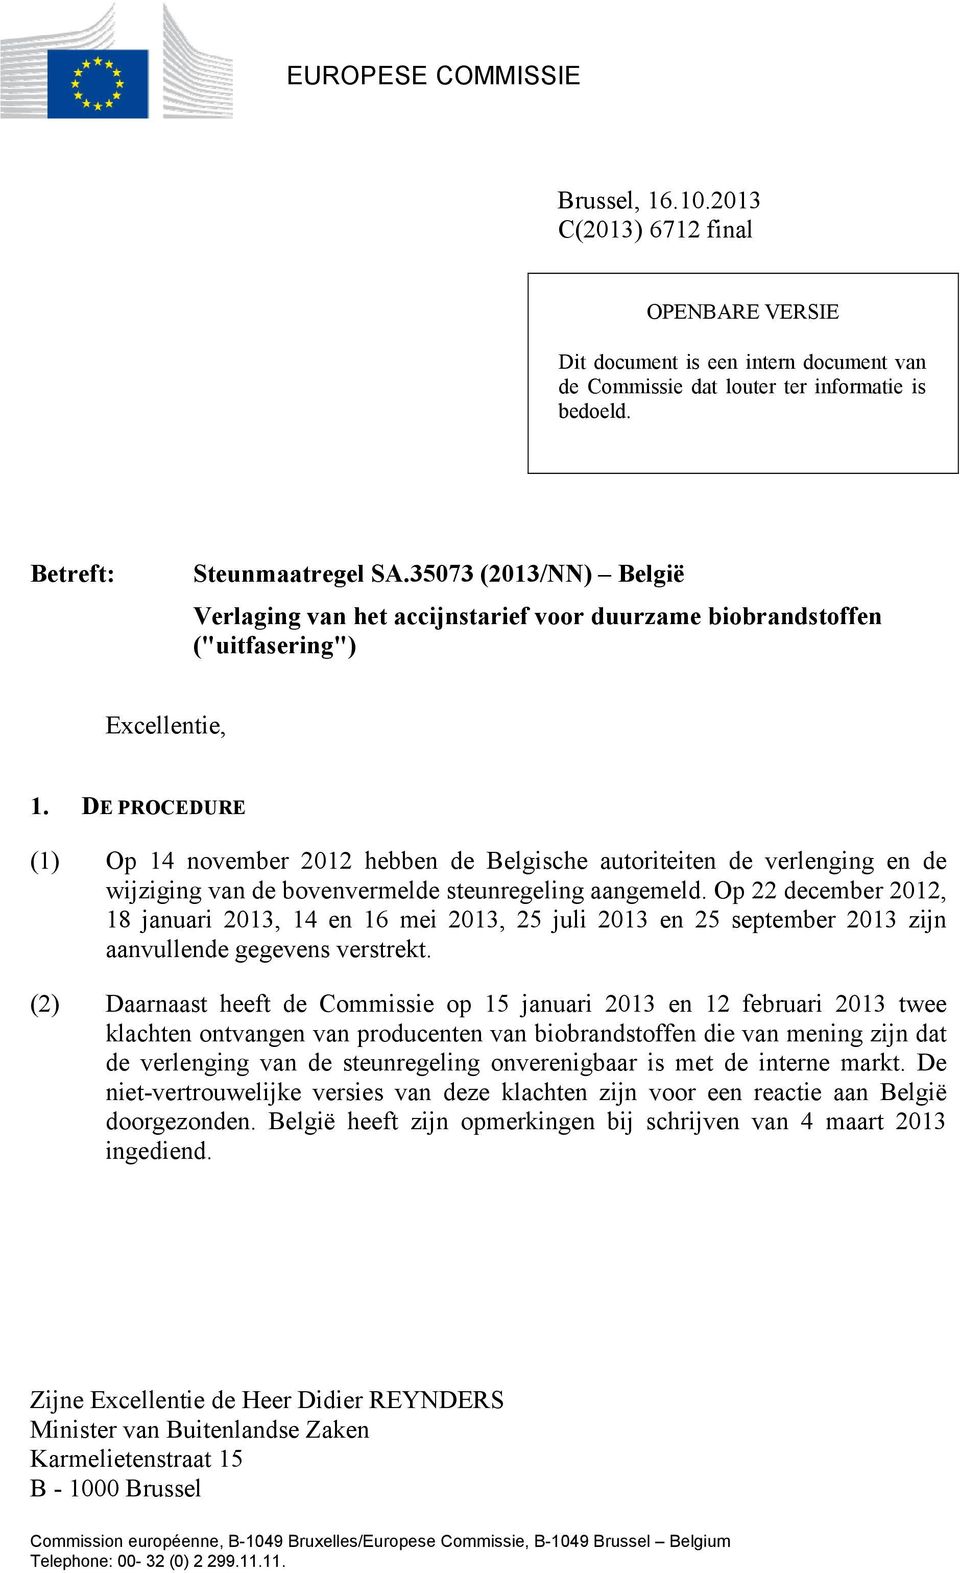 DE PROCEDURE (1) Op 14 november 2012 hebben de Belgische autoriteiten de verlenging en de wijziging van de bovenvermelde steunregeling aangemeld.